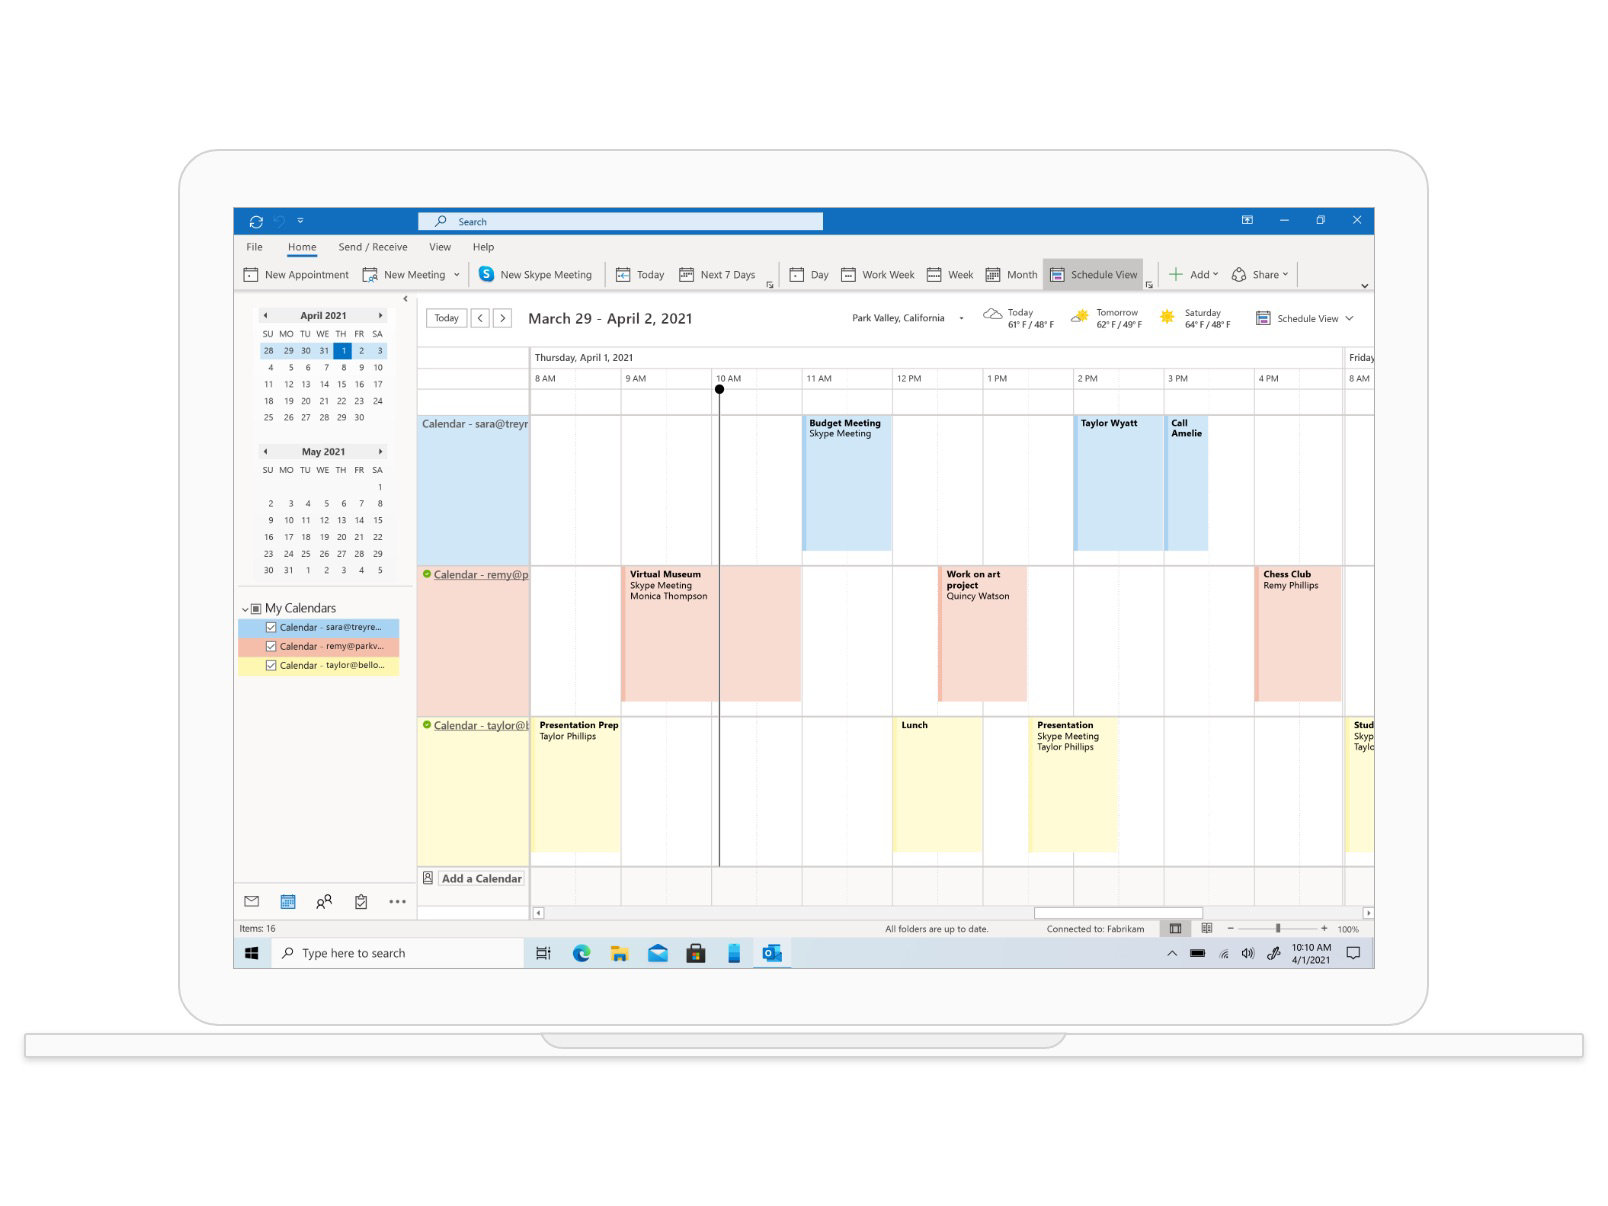 Tampilan kalender di Outlook memperlihatkan rapat dan janji temu dalam satu minggu mulai tanggal 29 Maret.